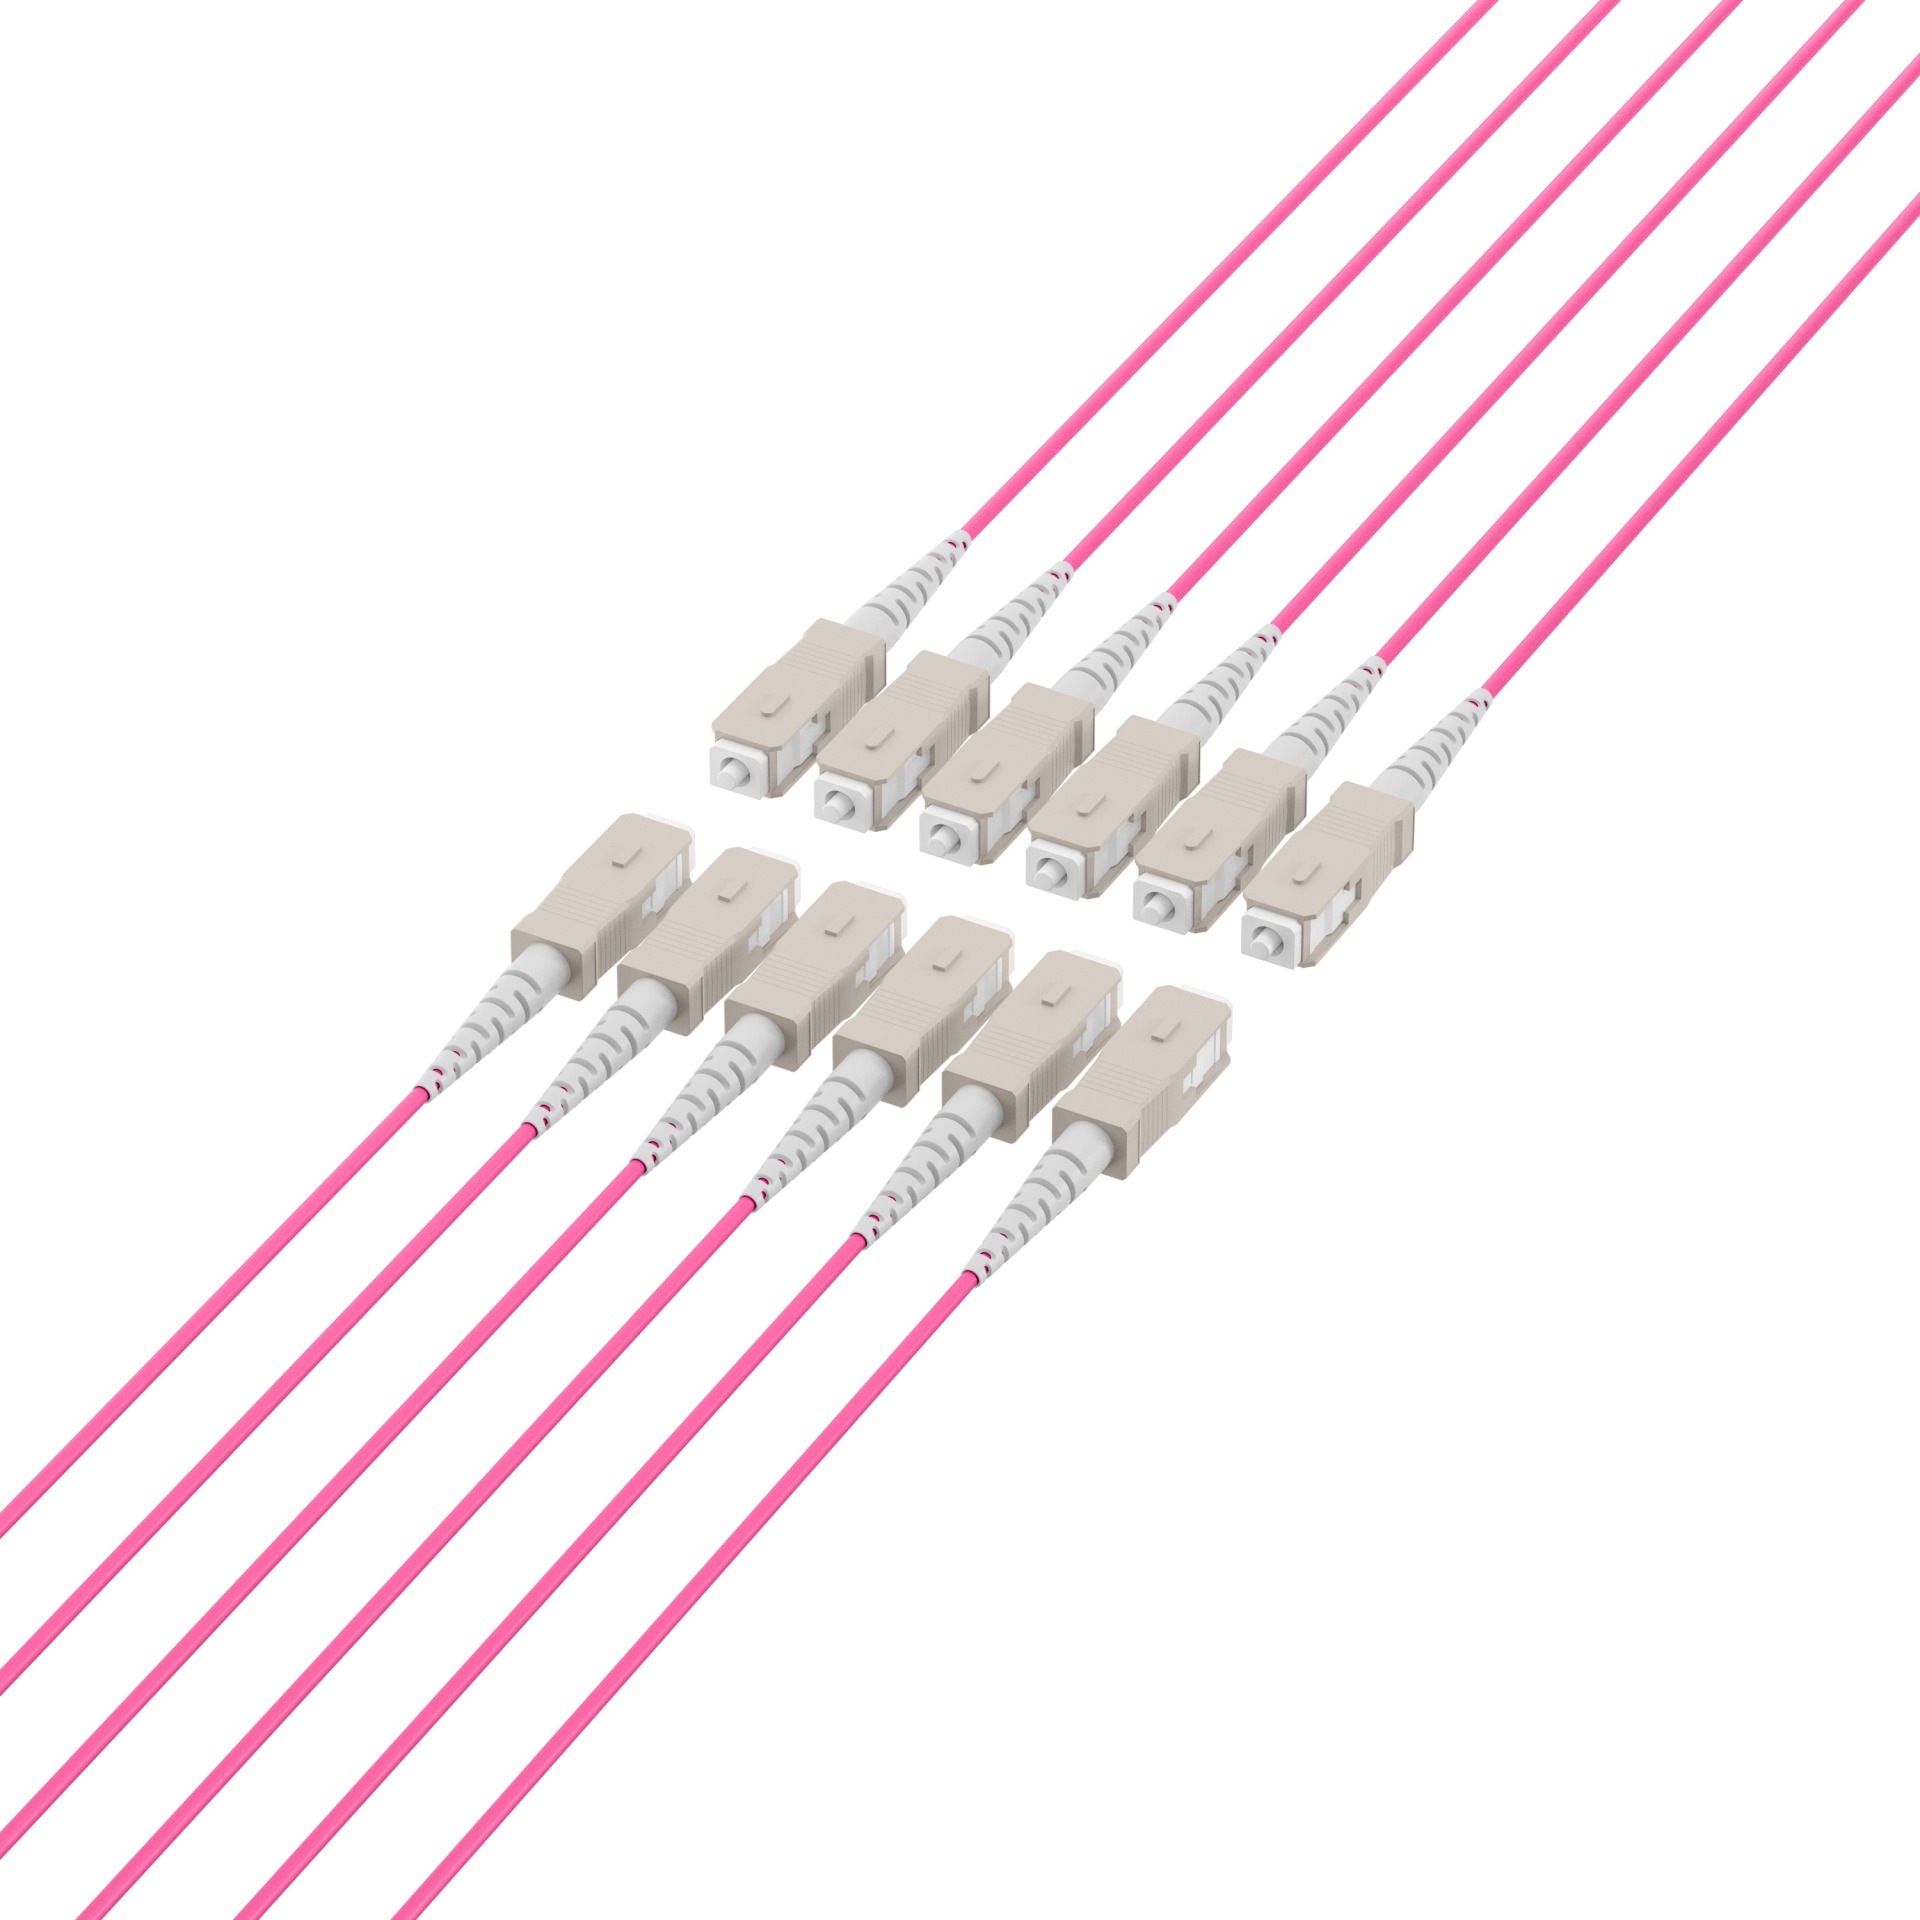 Trunk cable U-DQ(ZN)BH OM4 12G (1x12) SC-SC,100m Dca LSZH